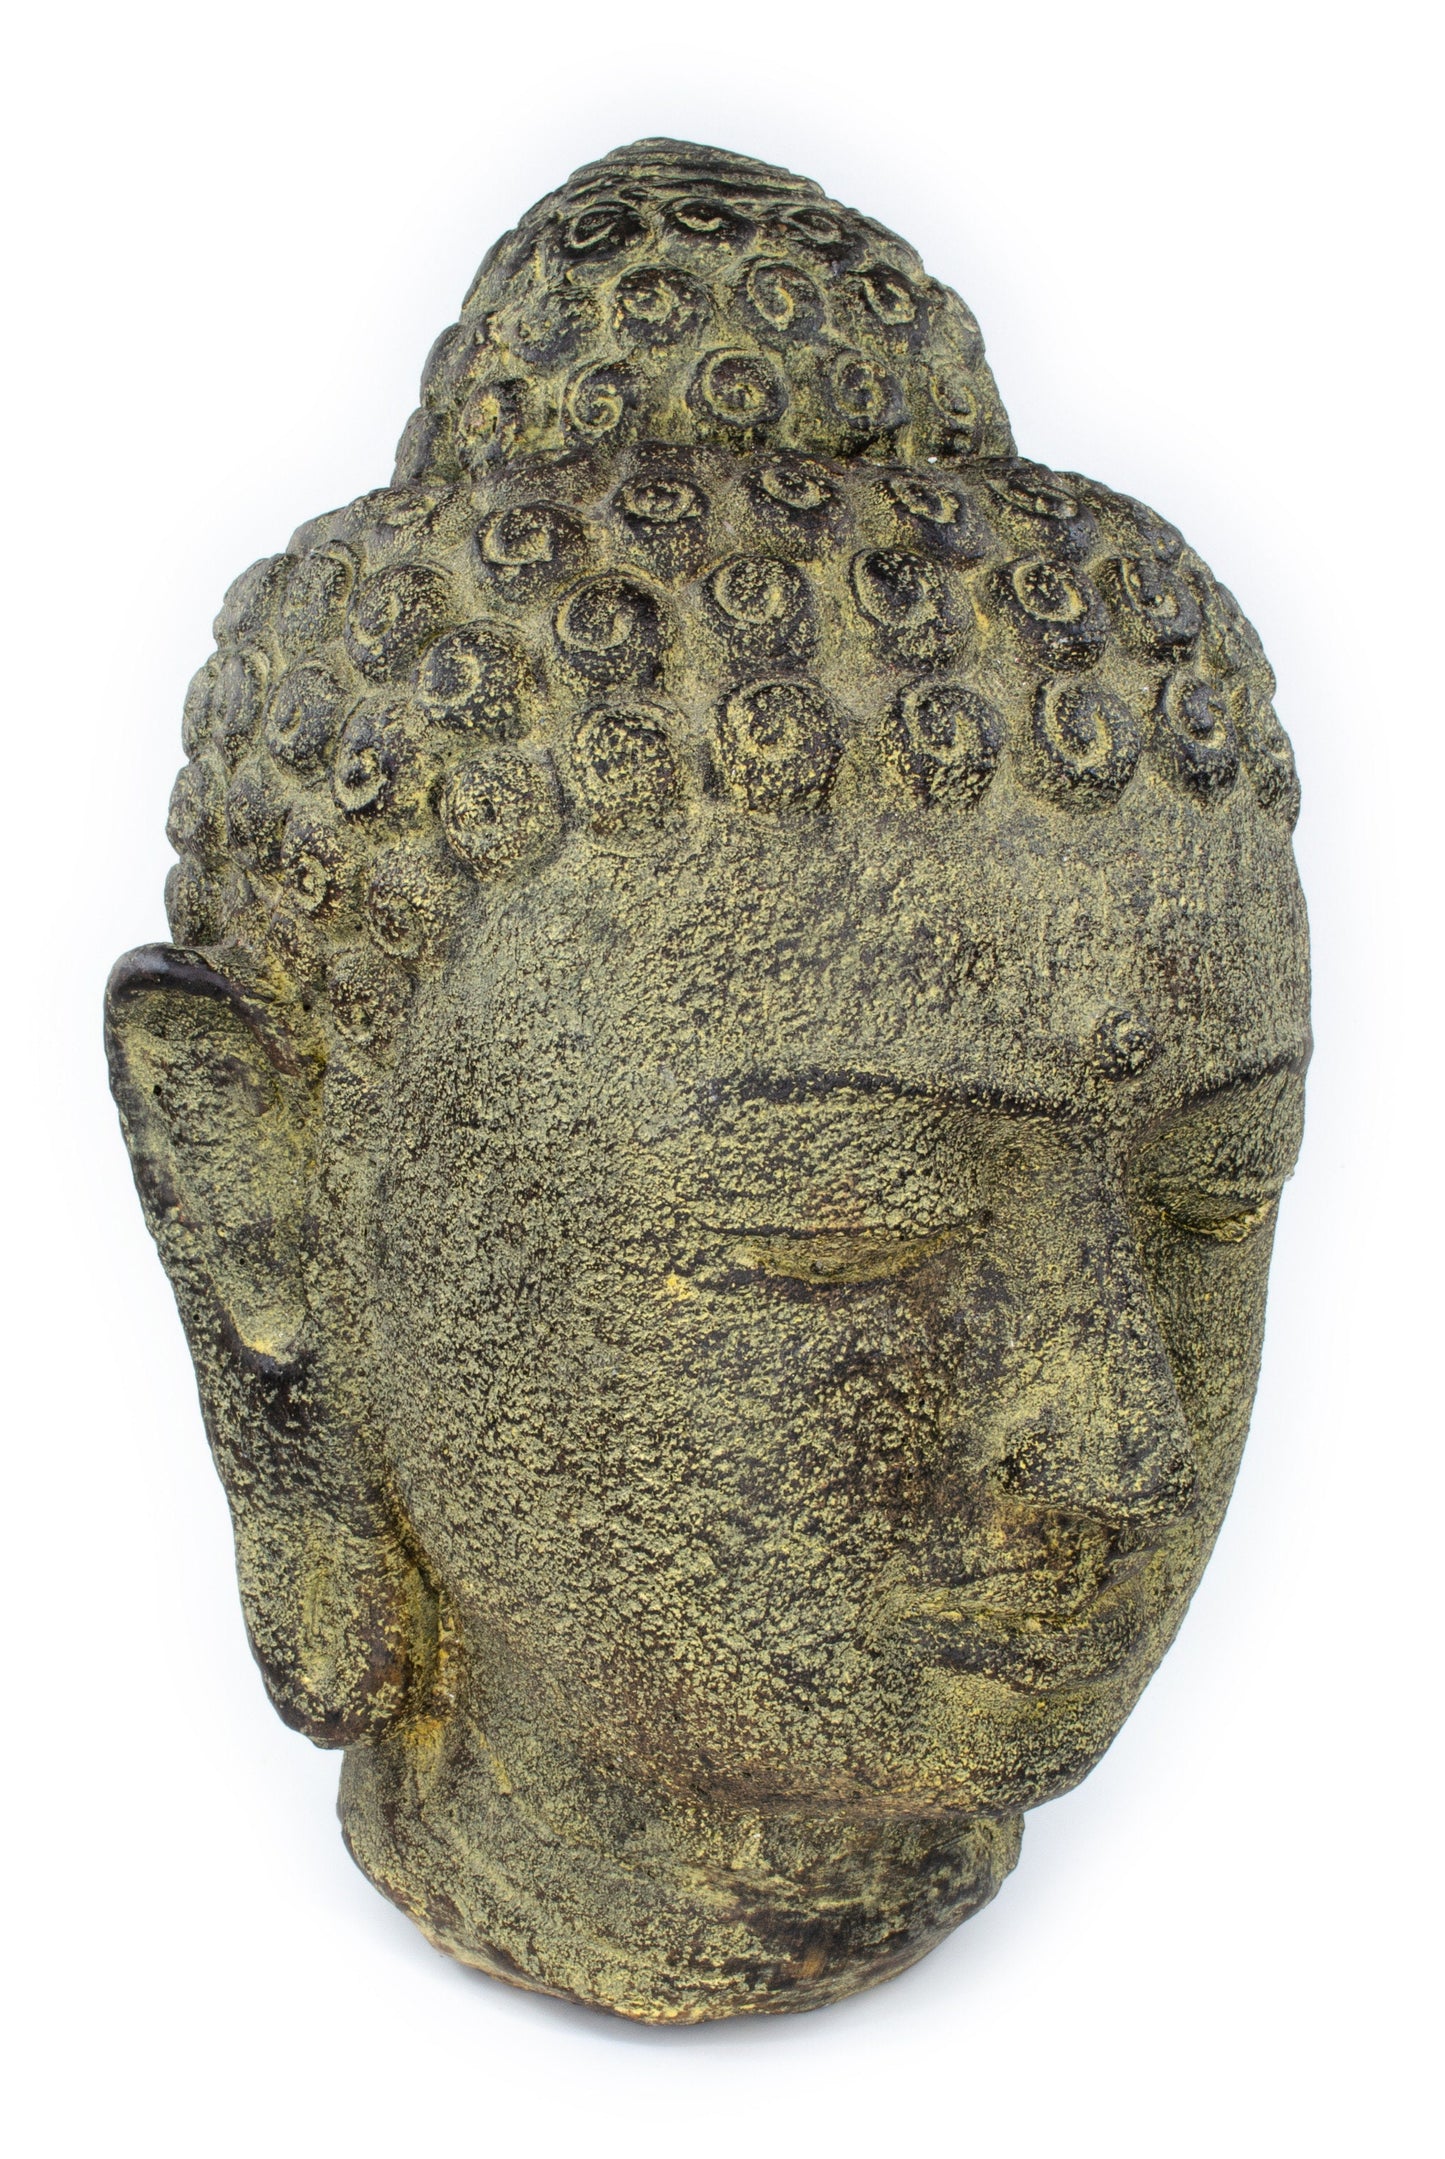 Buddha Kopf - Garten Deko Raumdeko - Gegossene Stein Figur Wetterfest - Steingemisch Gelb- 30x19x21 cm